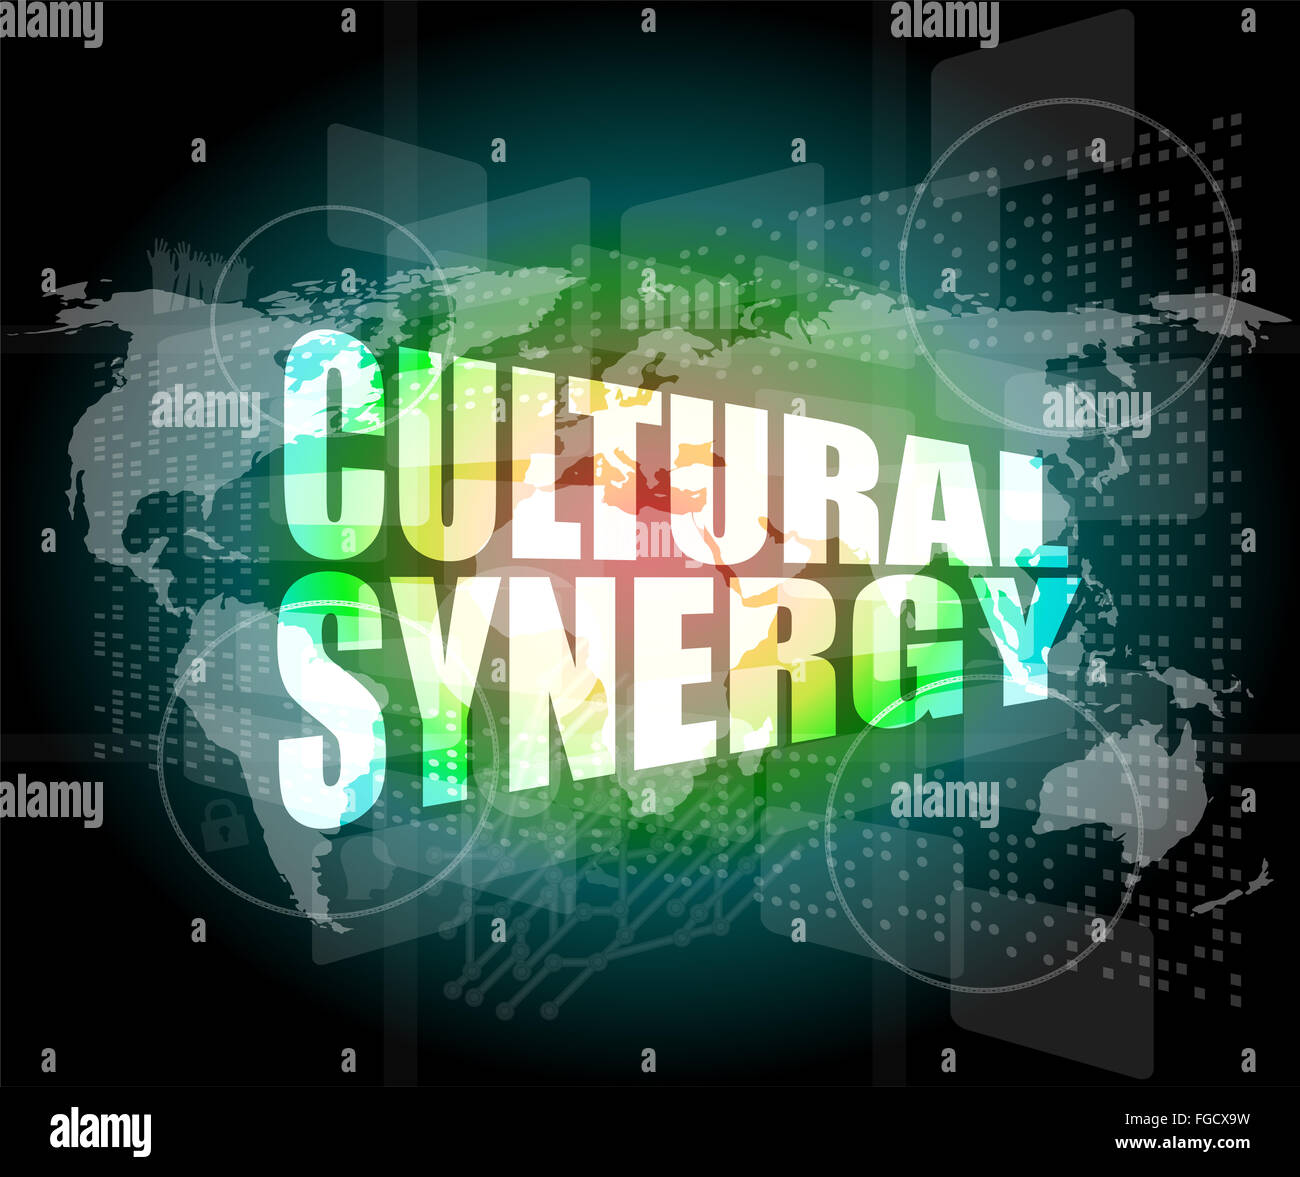 Synergie culturelle mots sur écran numérique avec carte du monde Banque D'Images